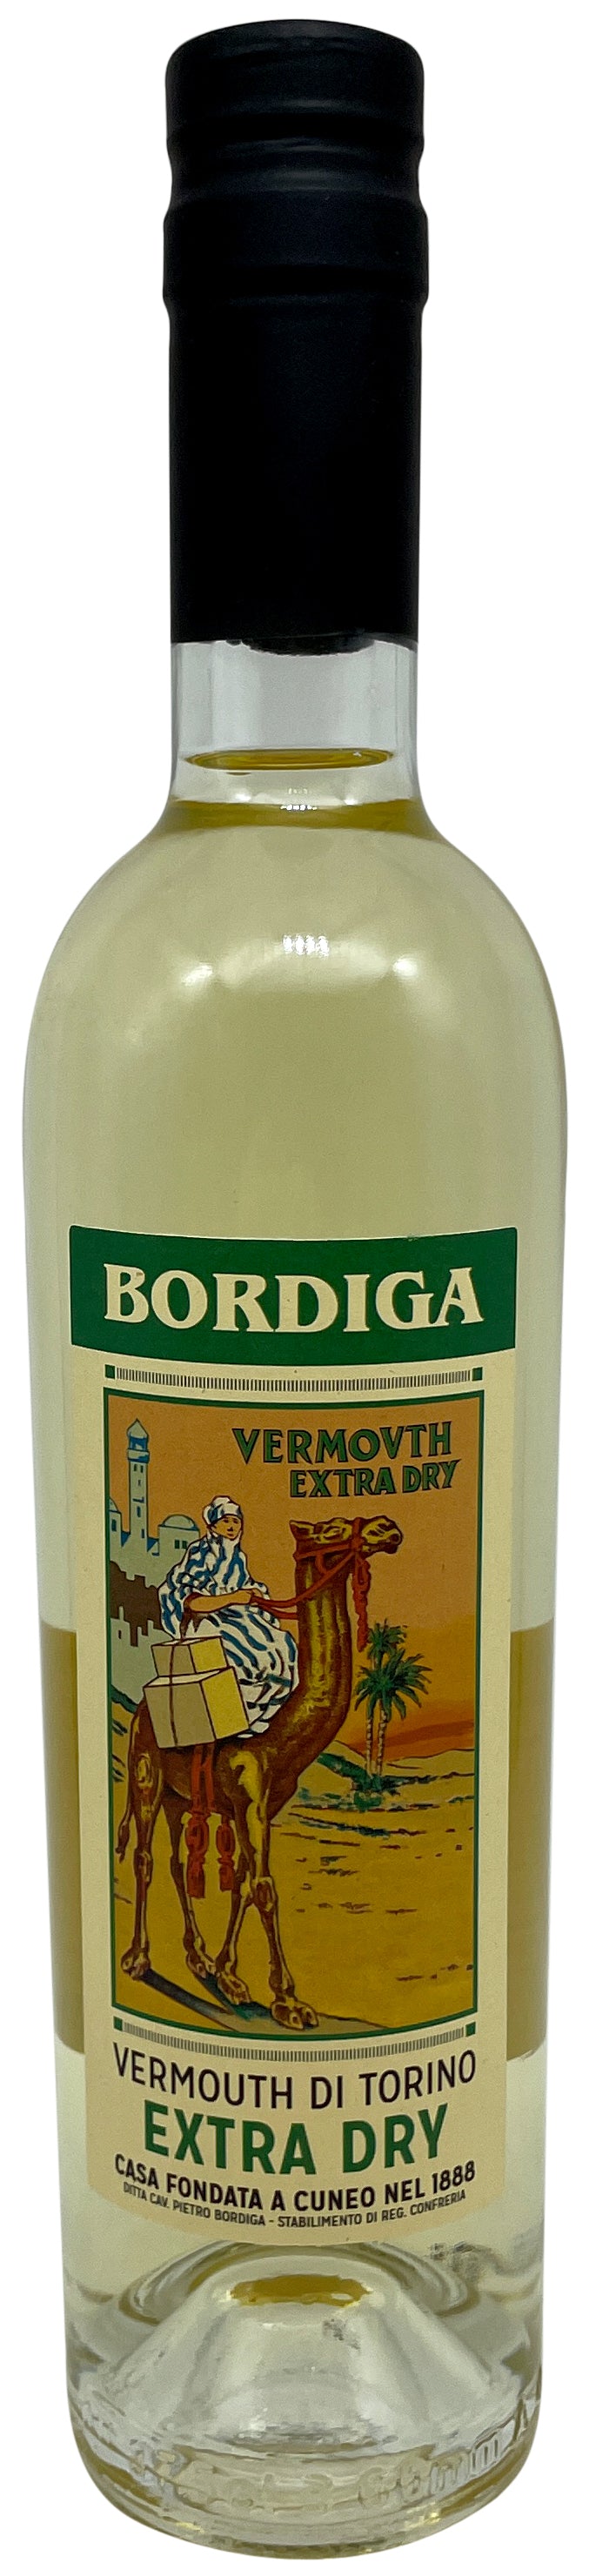 Vermouth di Torino Extra Dry 375ml